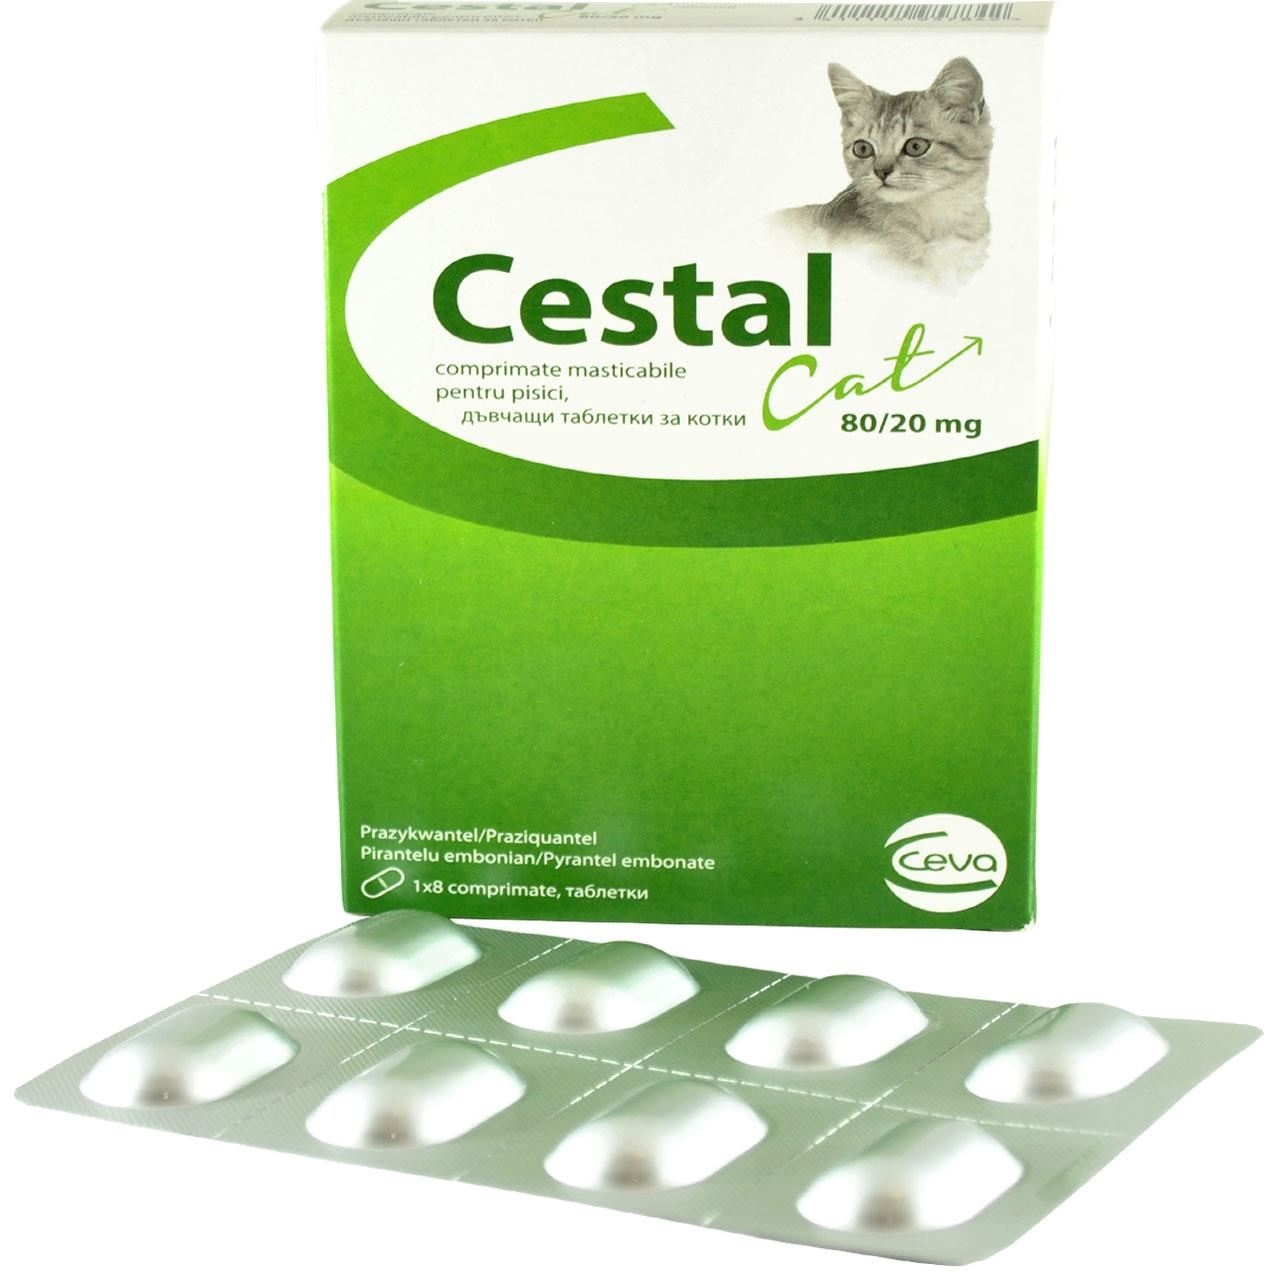 Cestal Cat Chew, 8 tablete masticabile antiparazitar intern pentru pisici Ceva Sante imagine 2022